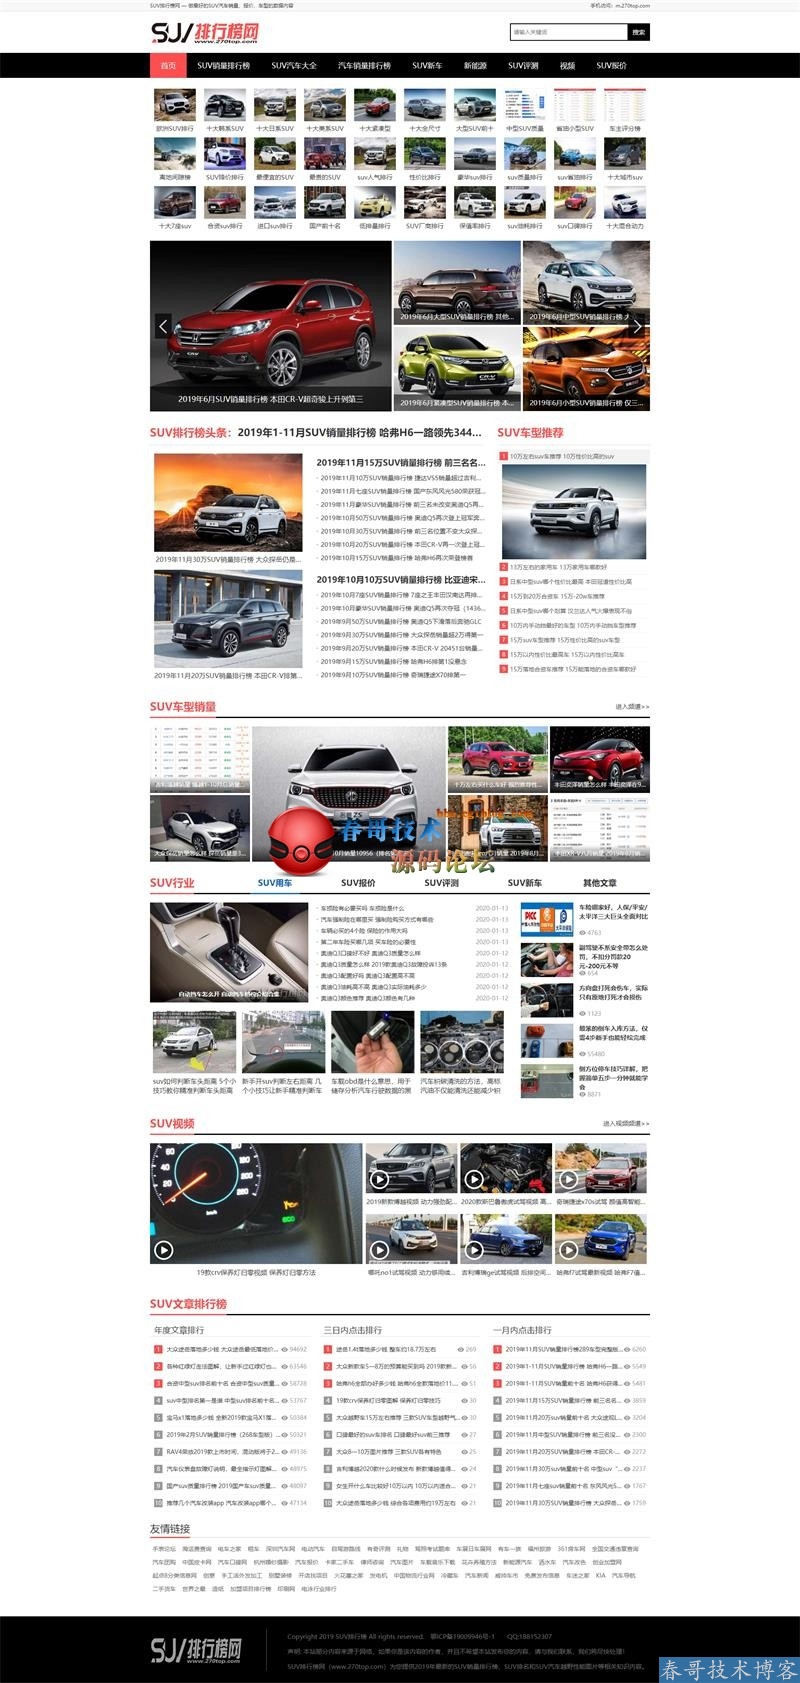 春哥汽车排行榜汽车门户网站源码系统全新发布！